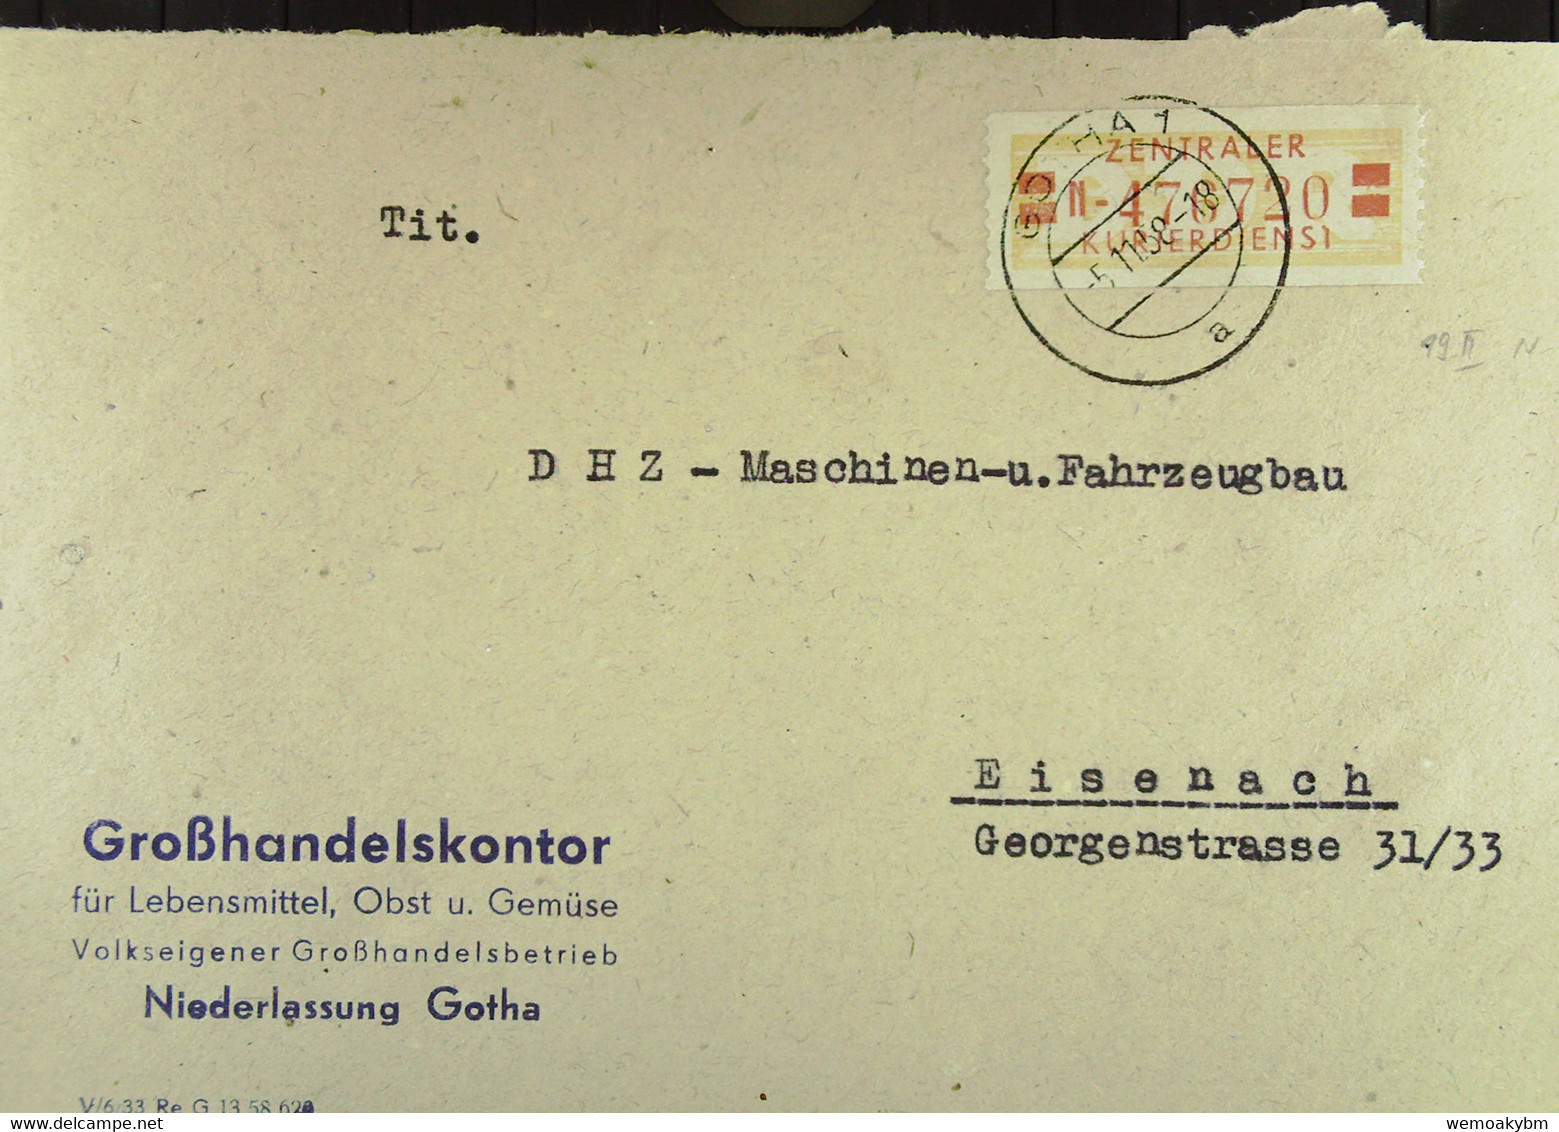 Fern-Bf Mit ZKD-Streifen Lfd.Nr: =N 476720= Vom 5.11.58 Abs: Großhandelskontor Gotha An DHZ Masch.u Fahrzeugbau Eisenach - Central Mail Service